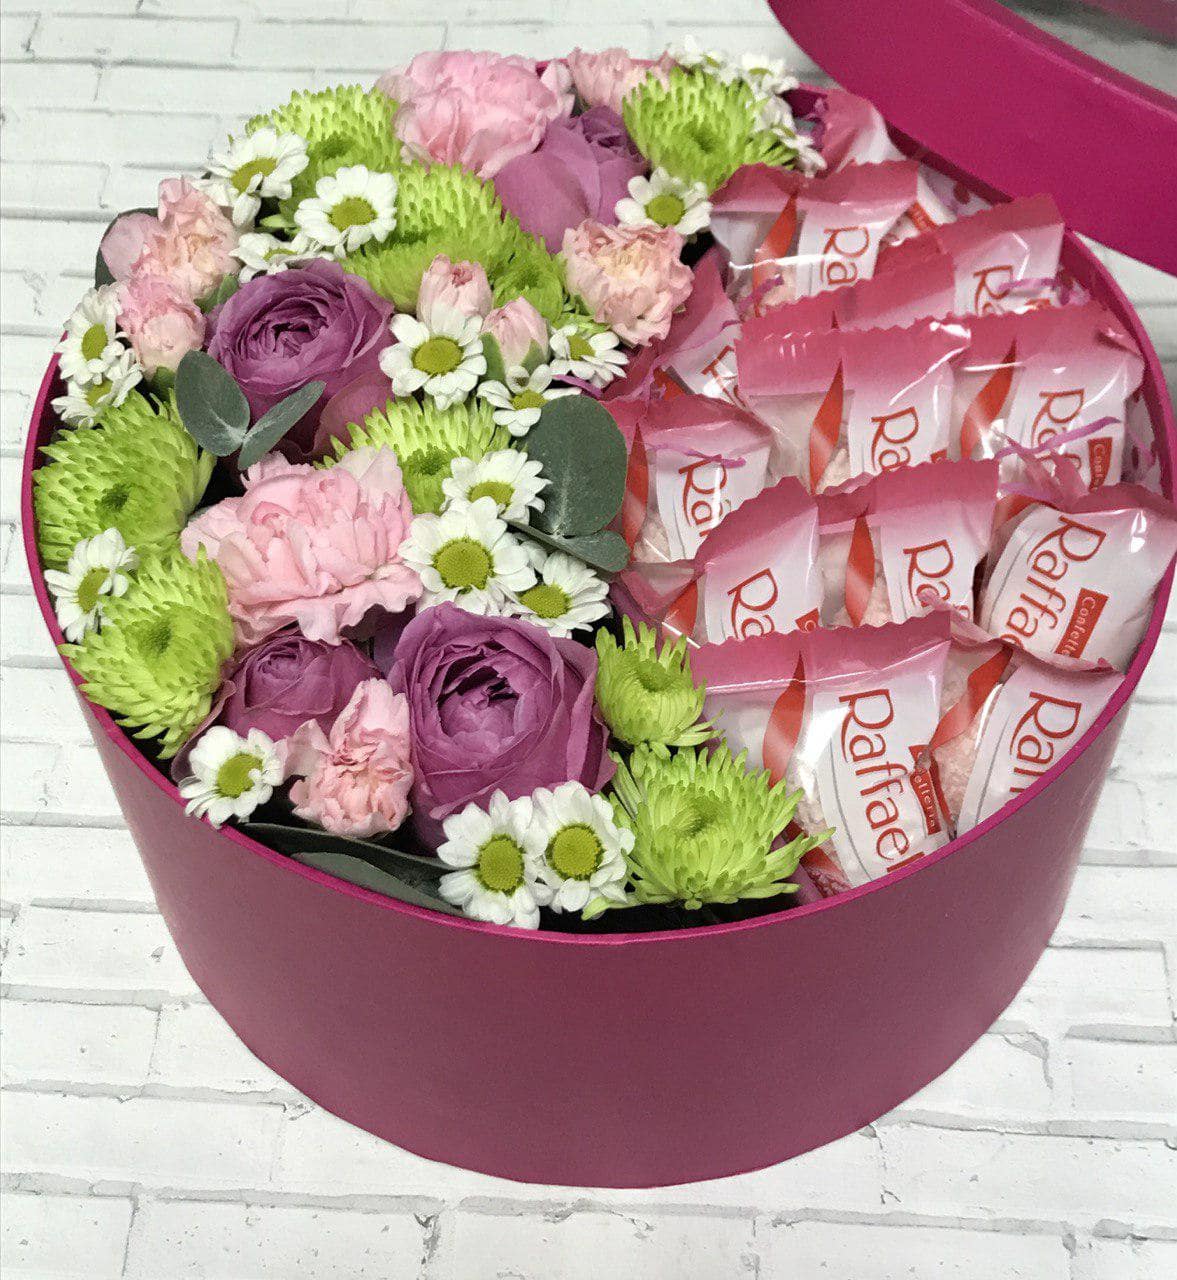 Сладкие подарки с доставкой в Нижнем Новгороде. Цветы с конфетами в коробке. Подарок маме, бабушке, девочке, девушке, дочери